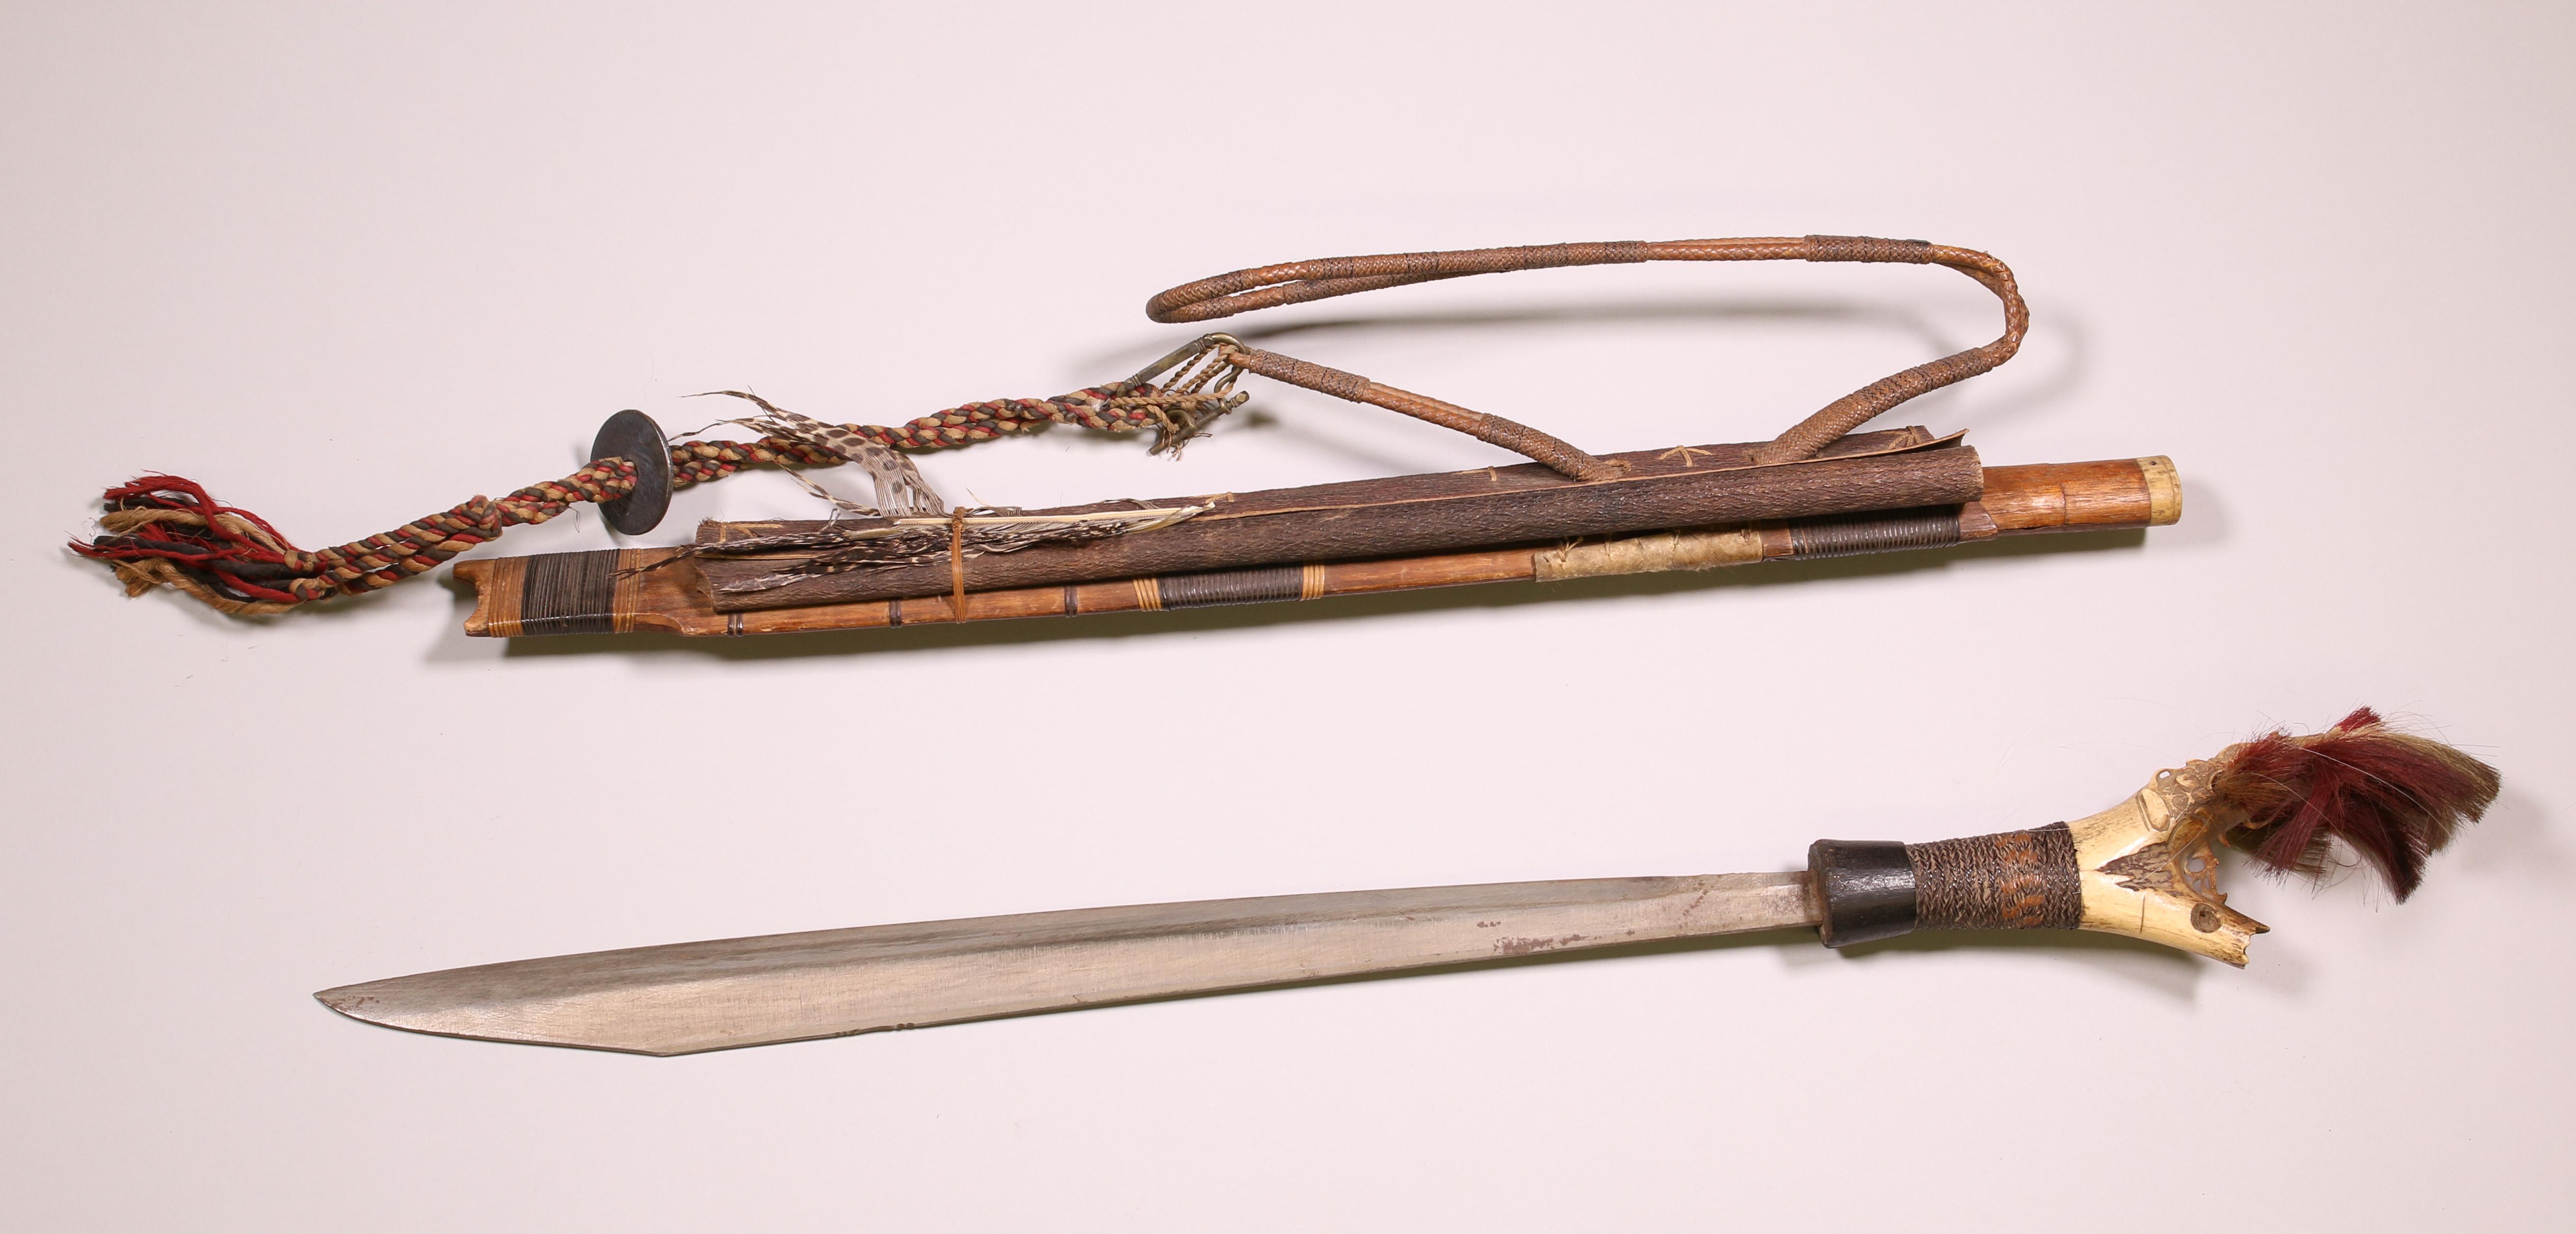 Borneo, East Kalimantan, Kenyah-Kayan Dayak, sword, mandau, - Image 7 of 9